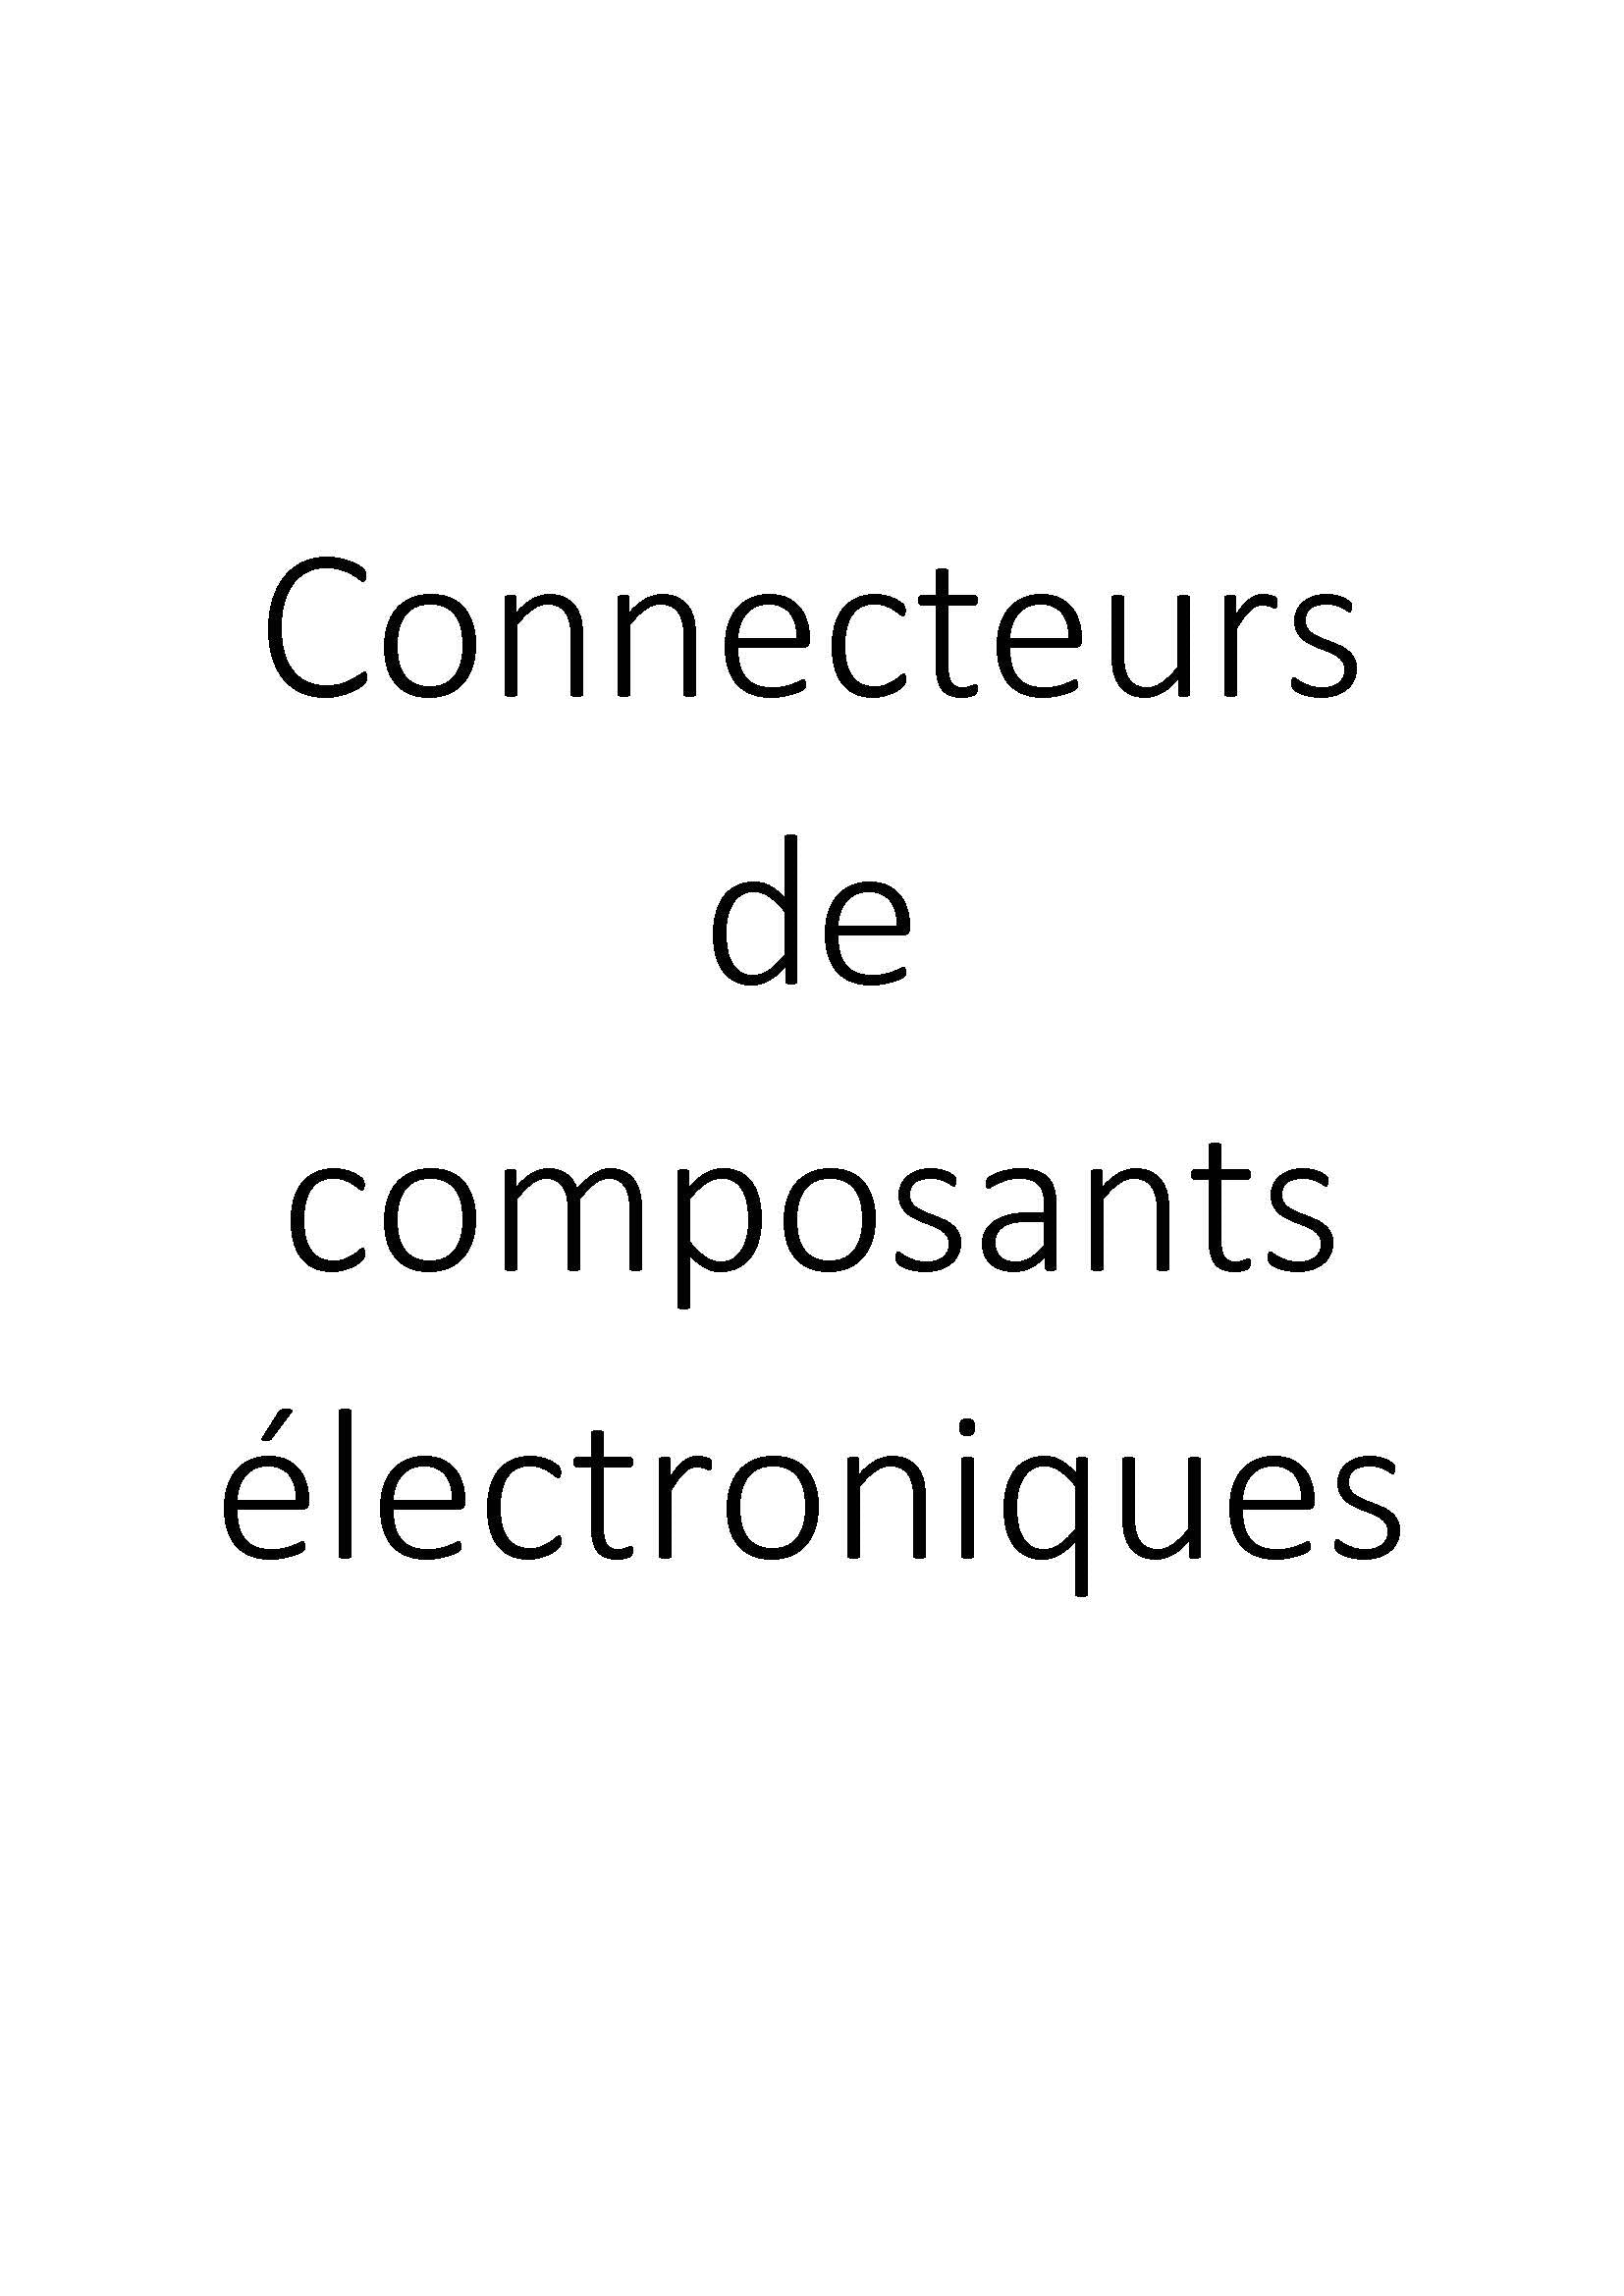 Connecteurs de composants électroniques clicktofournisseur.com